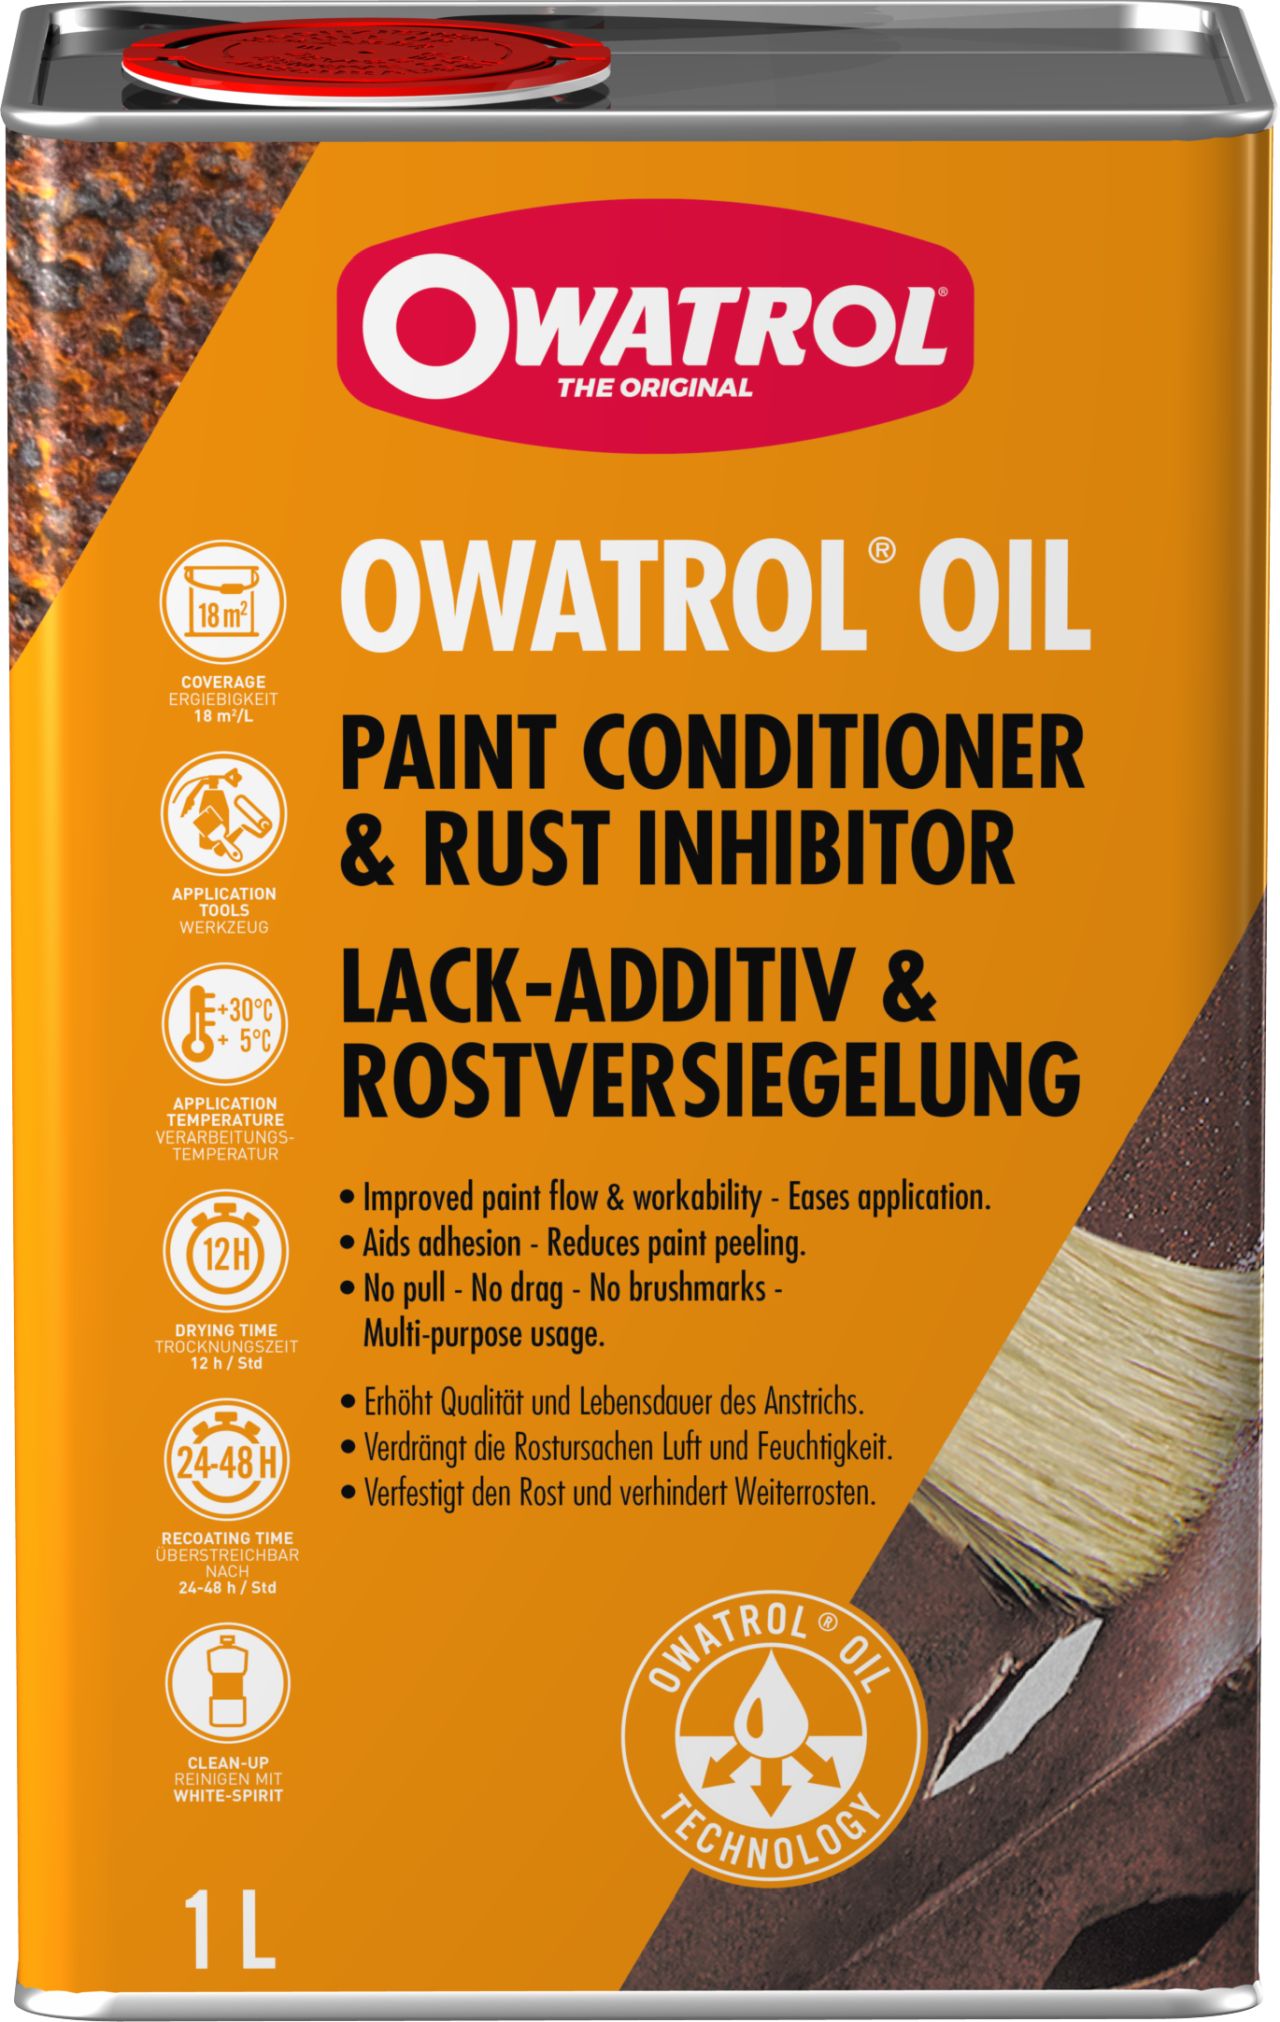 Owatrol Öl Spray - Rostversiegelung - 300 ml jetzt o..